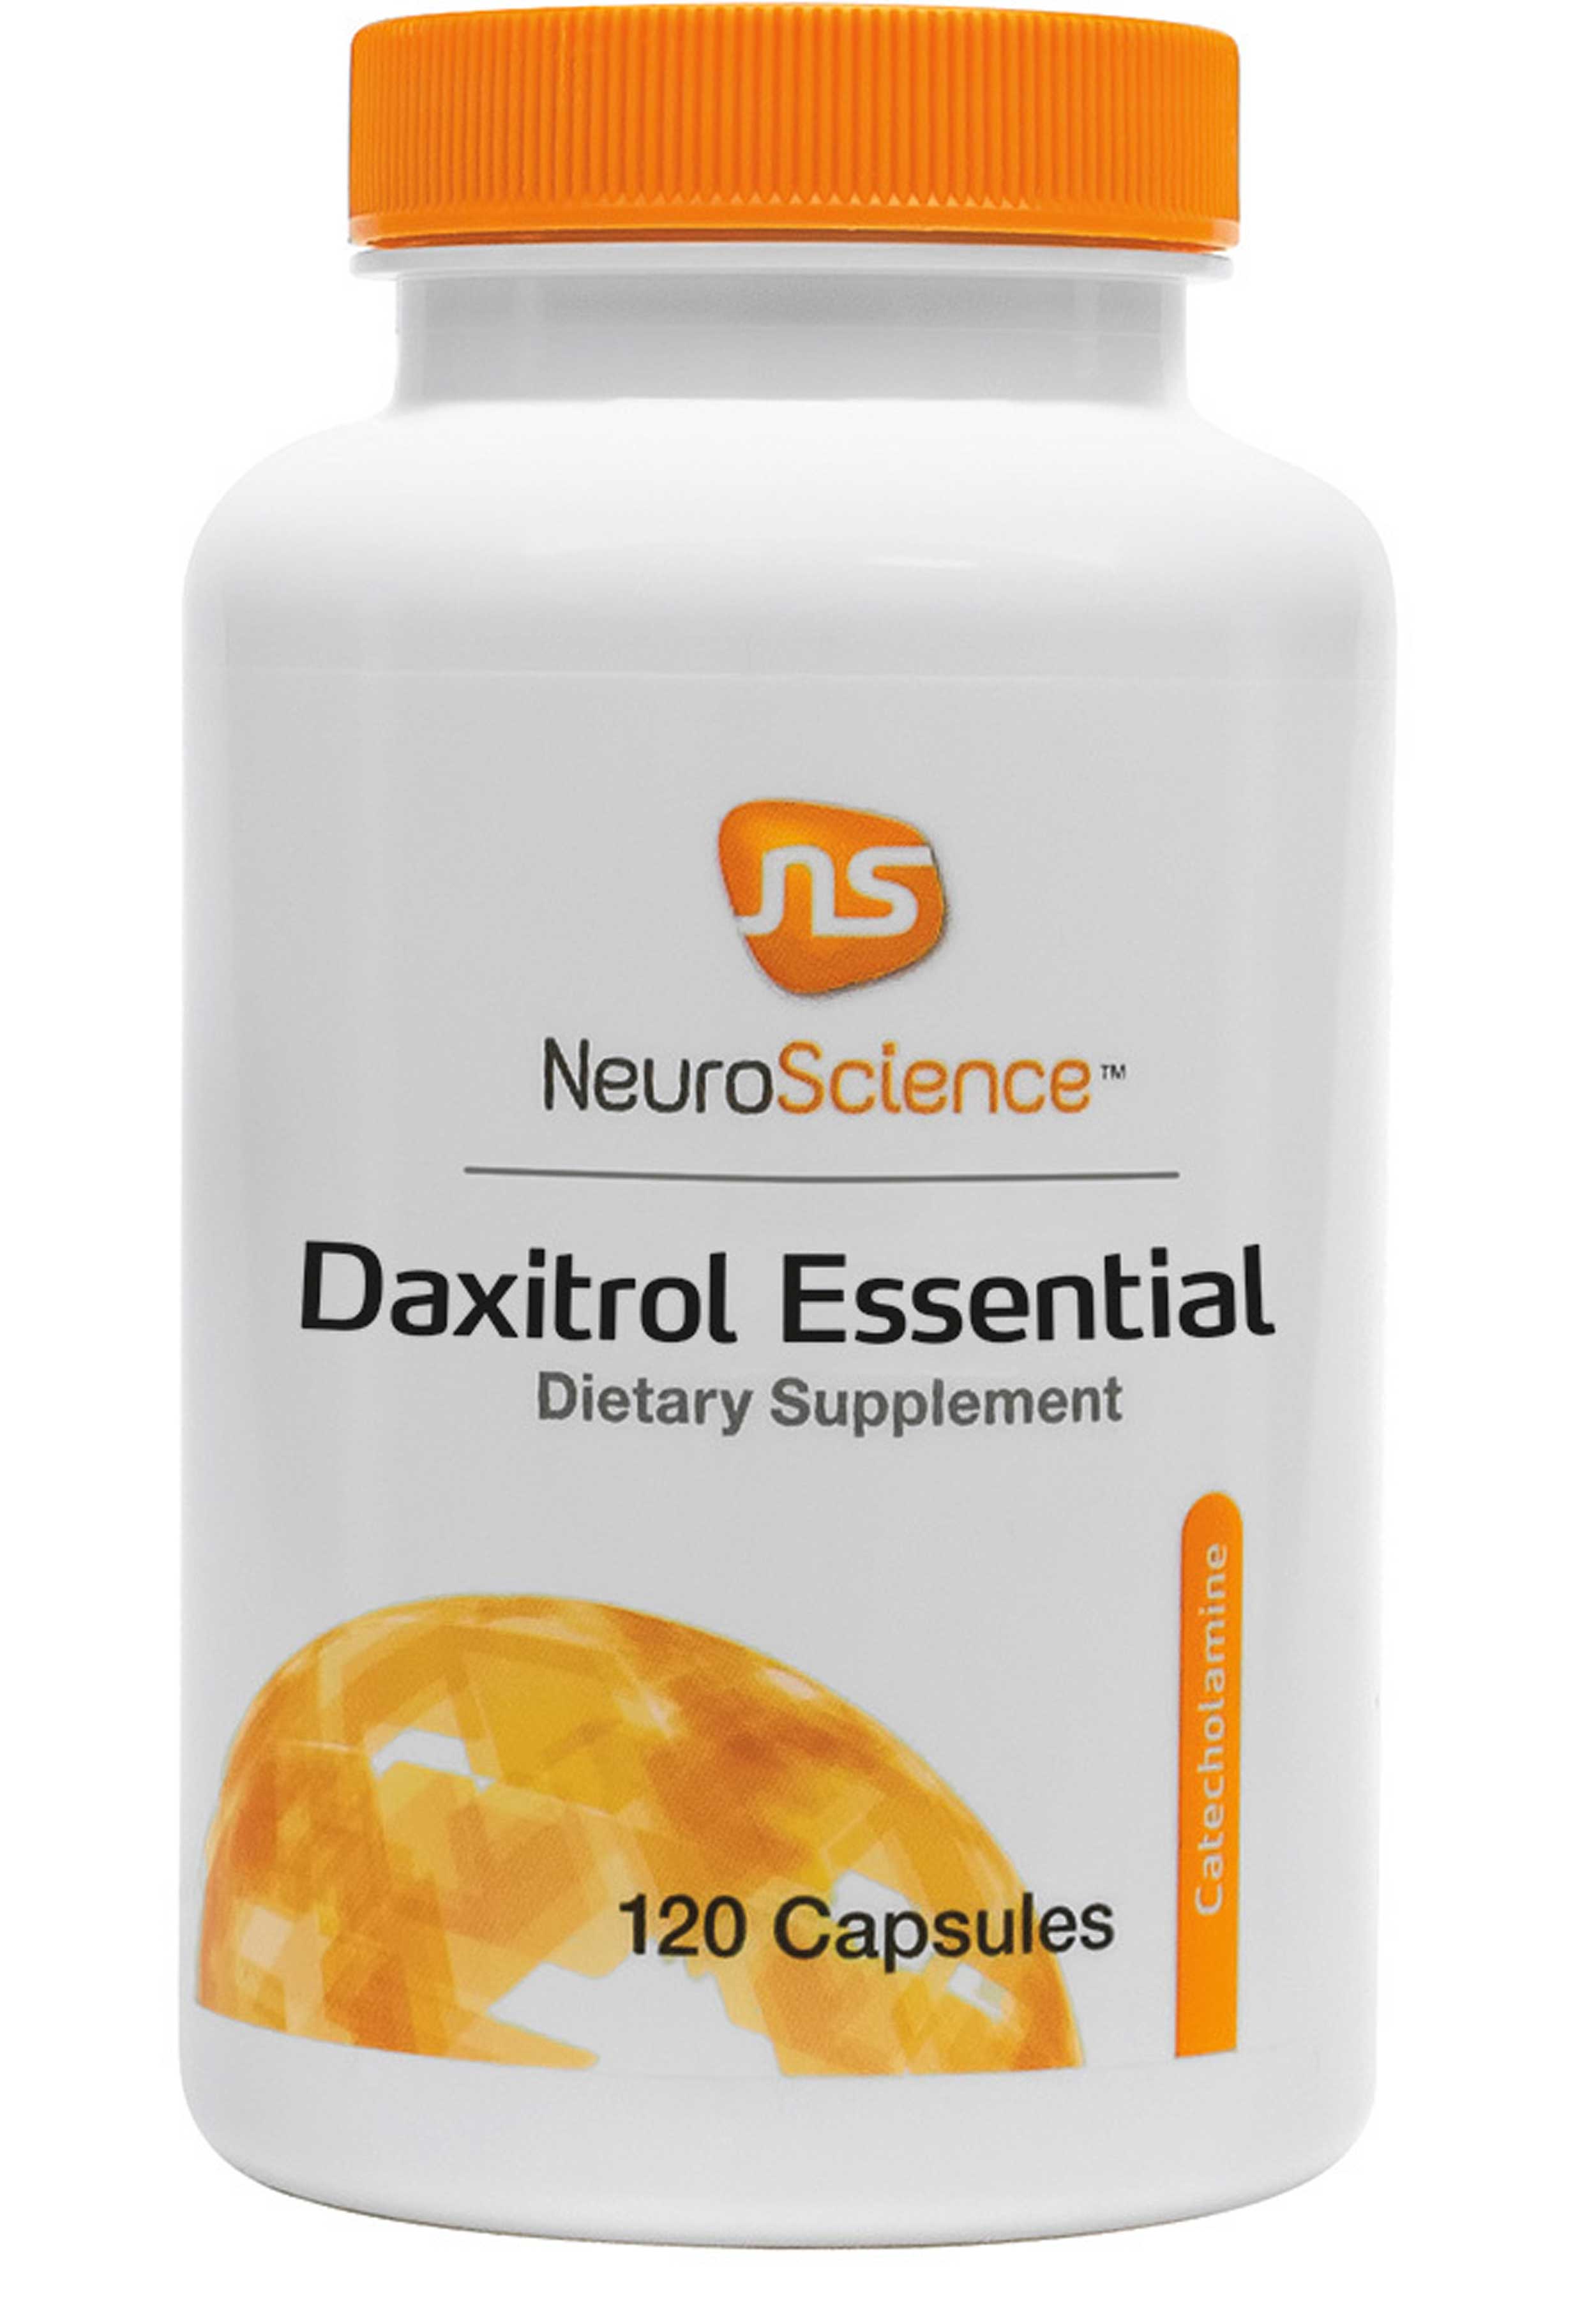 NeuroScience Daxitrol Essential